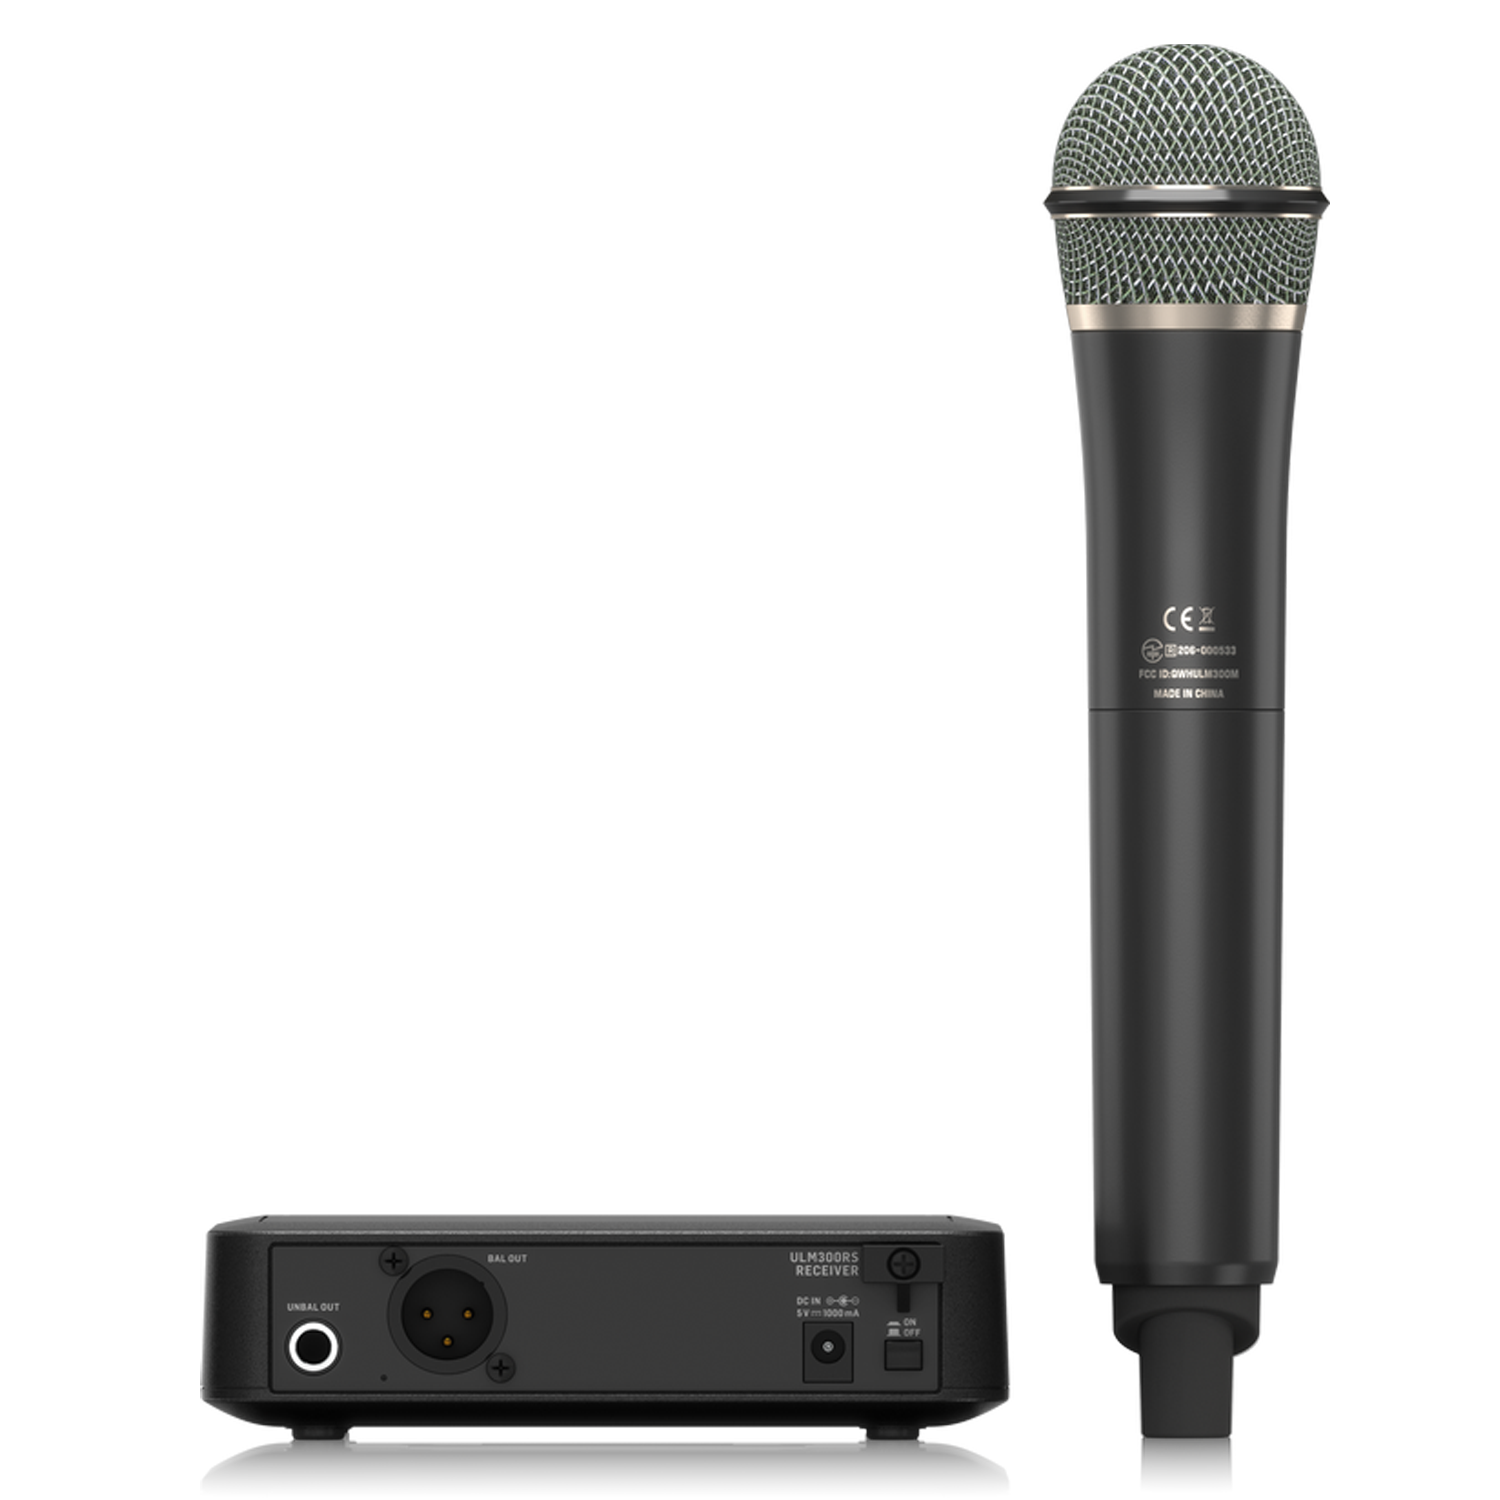 Behringer ULM302MIC Sistema de micrófono inalámbrico de mano dual